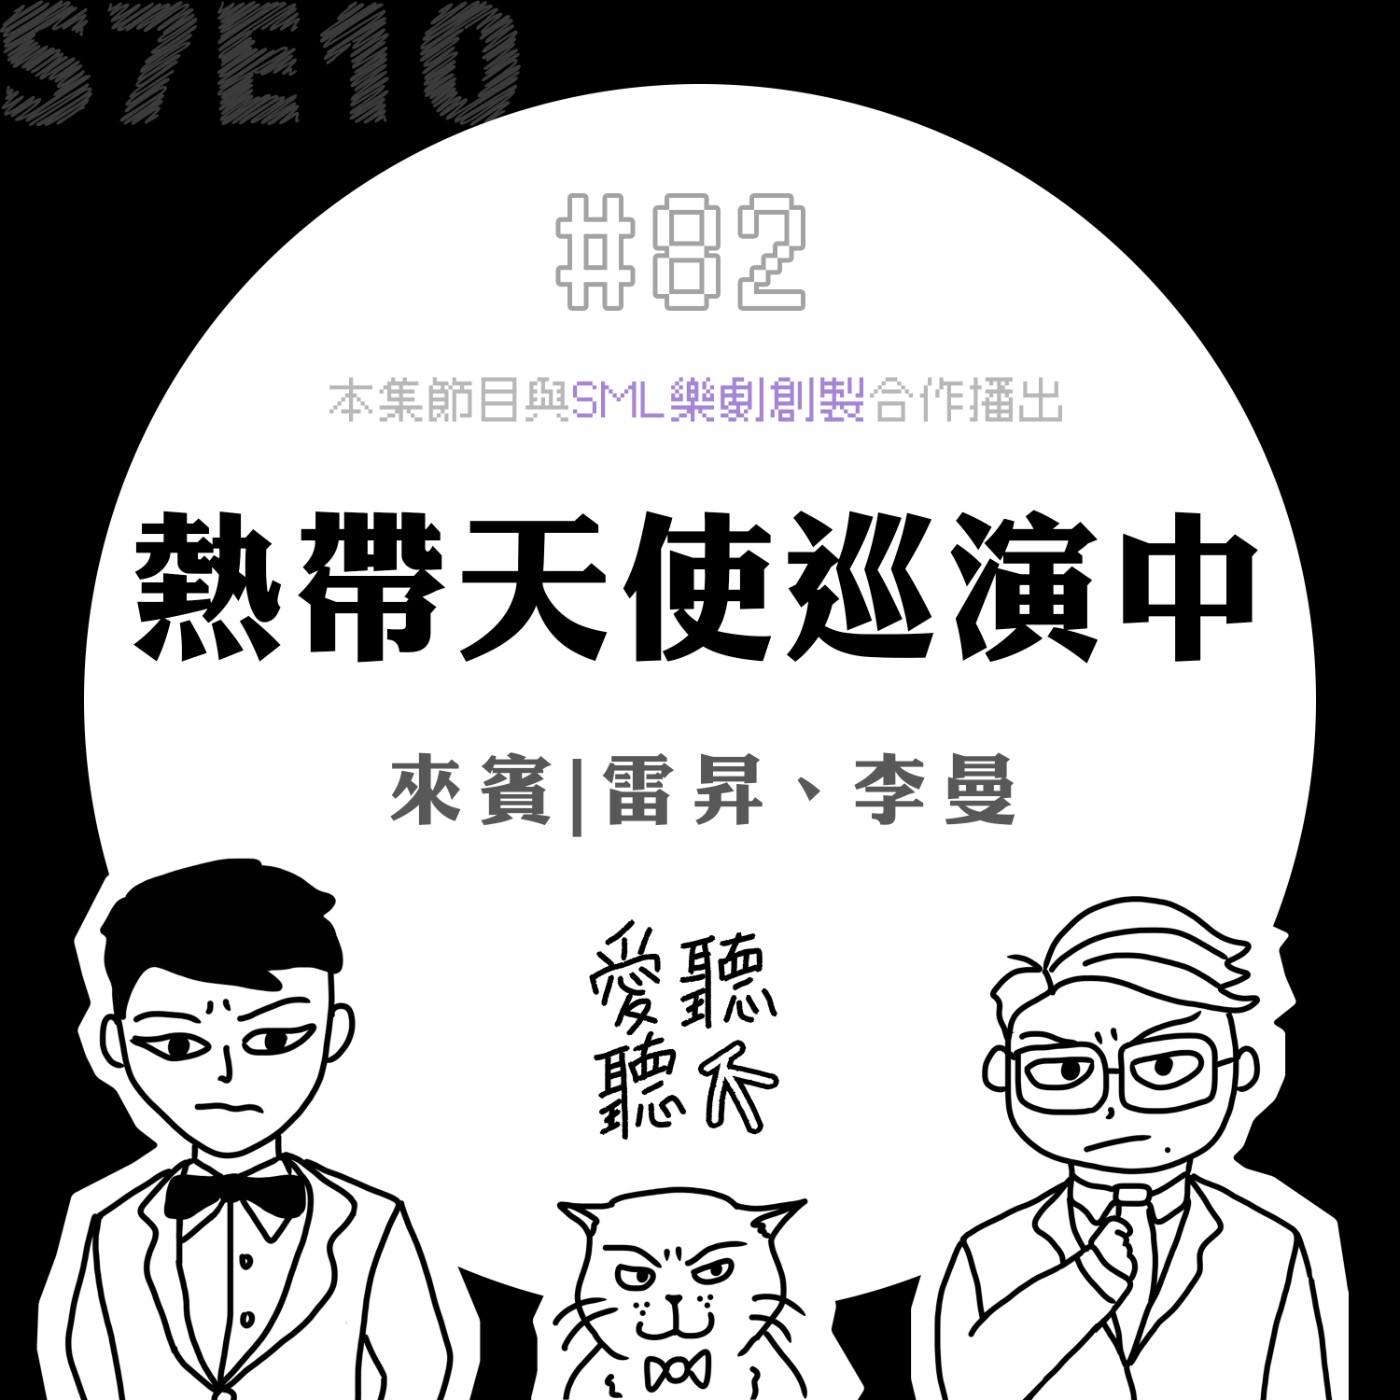 #82 熱帶天使巡演中 feat. 雷昇、李曼